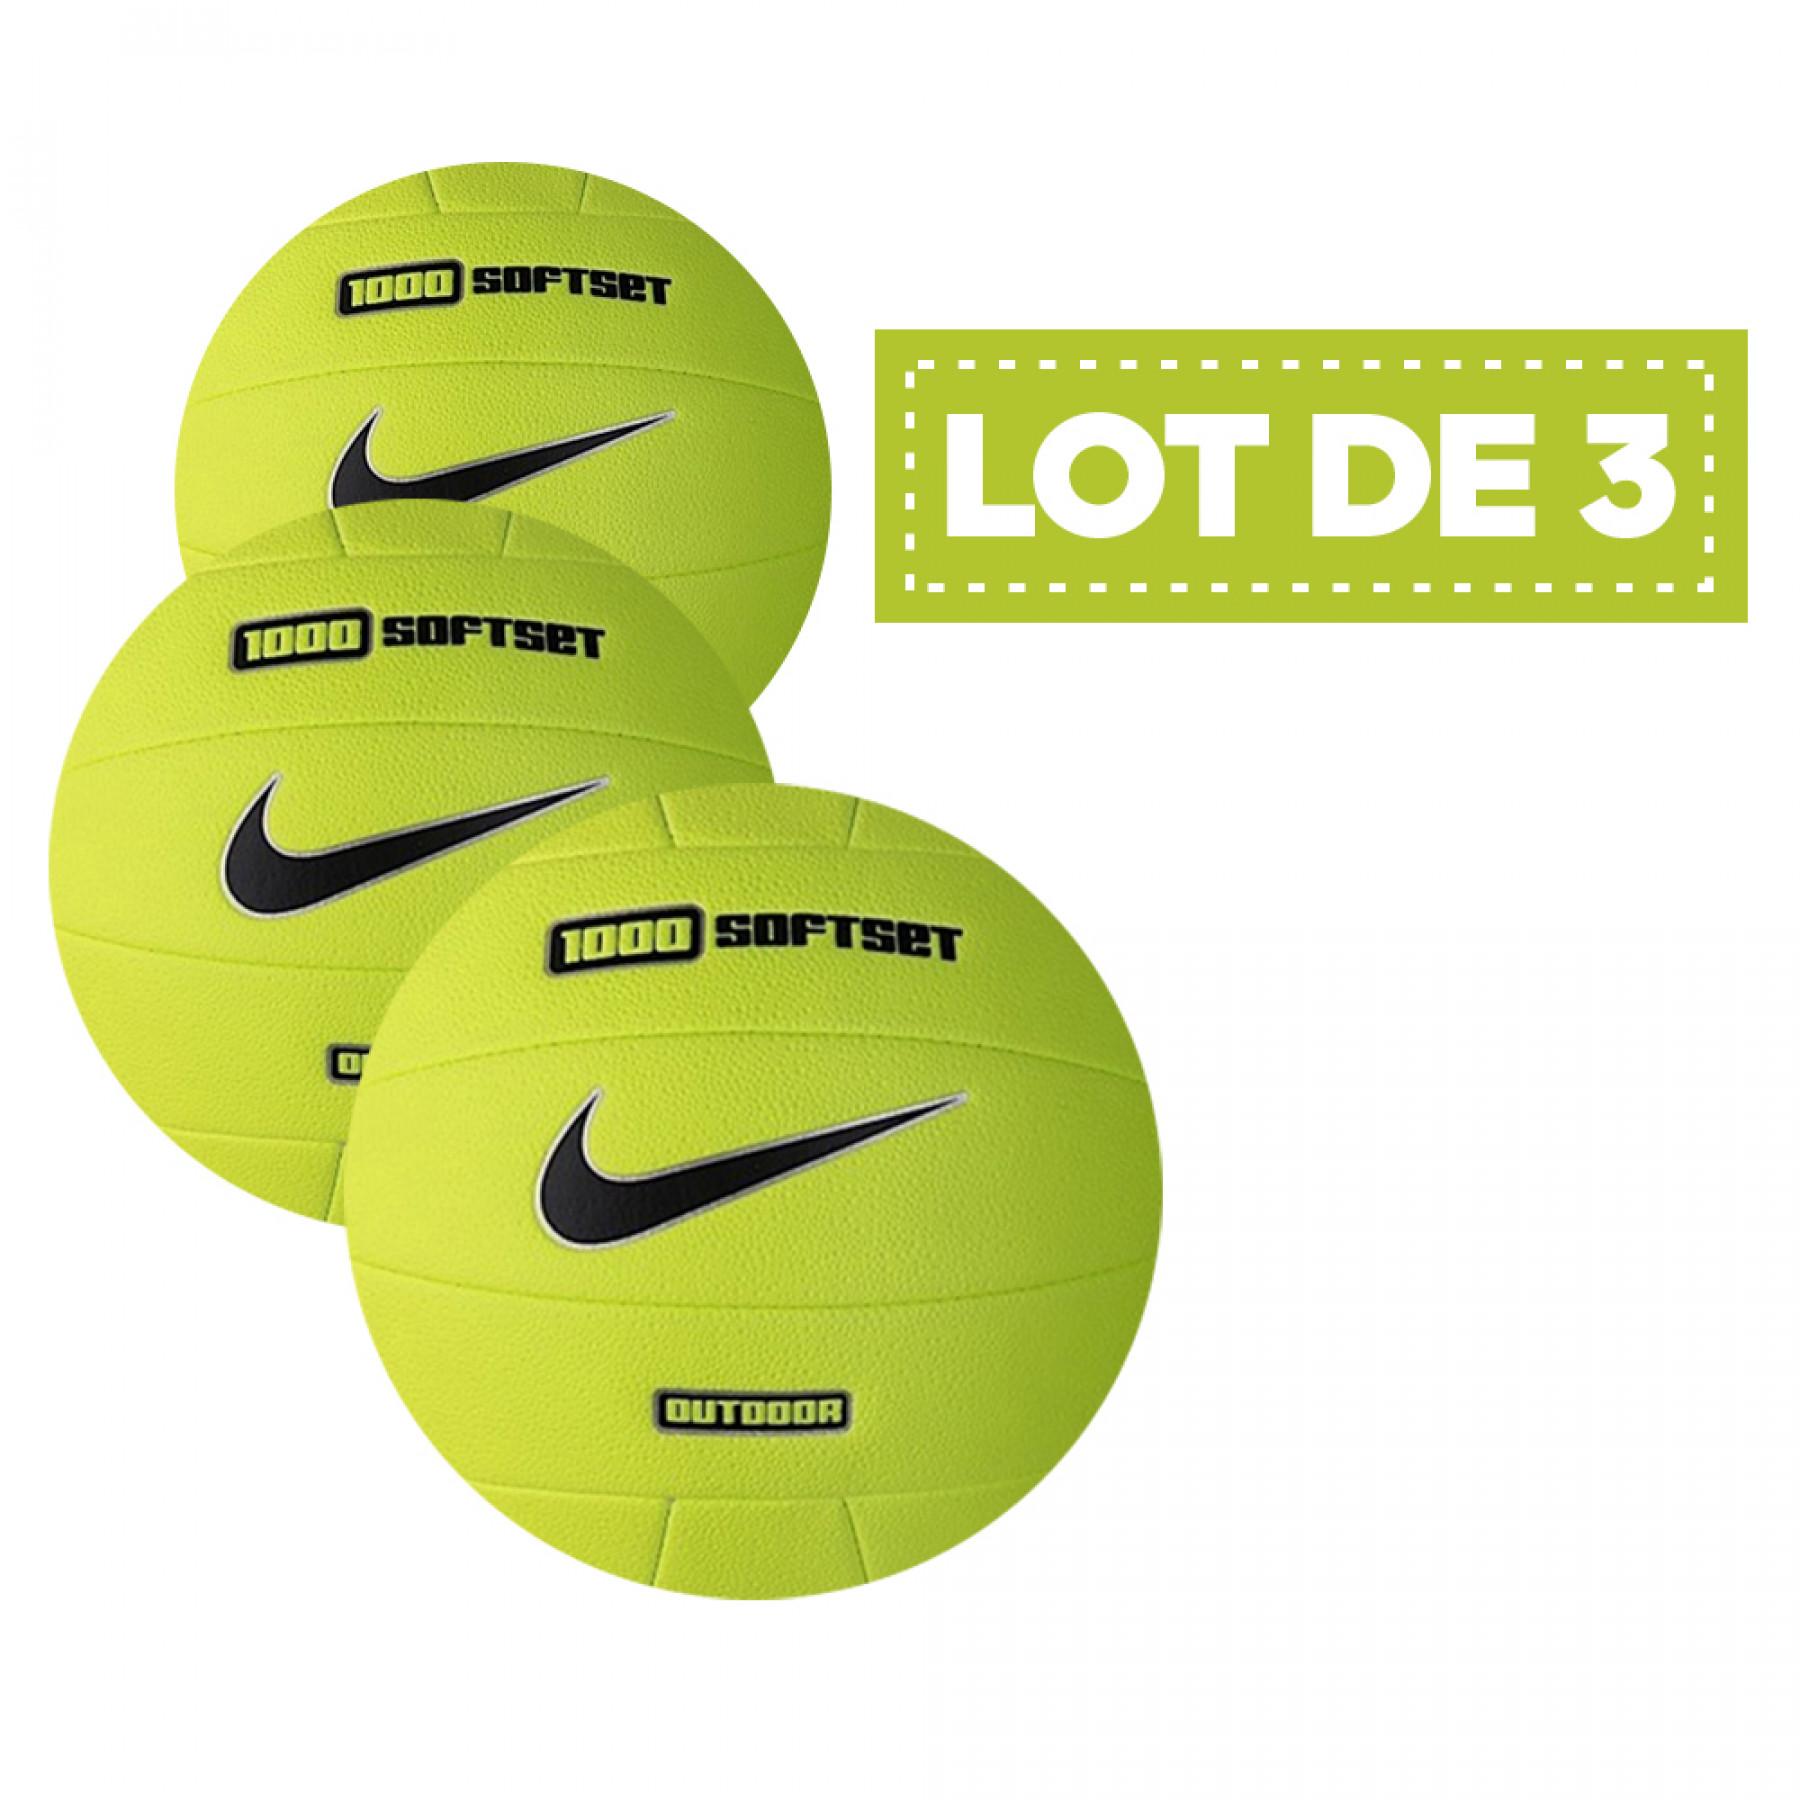 Satz mit 3 Luftballons Nike 1000 softset outdoor jaune fluo